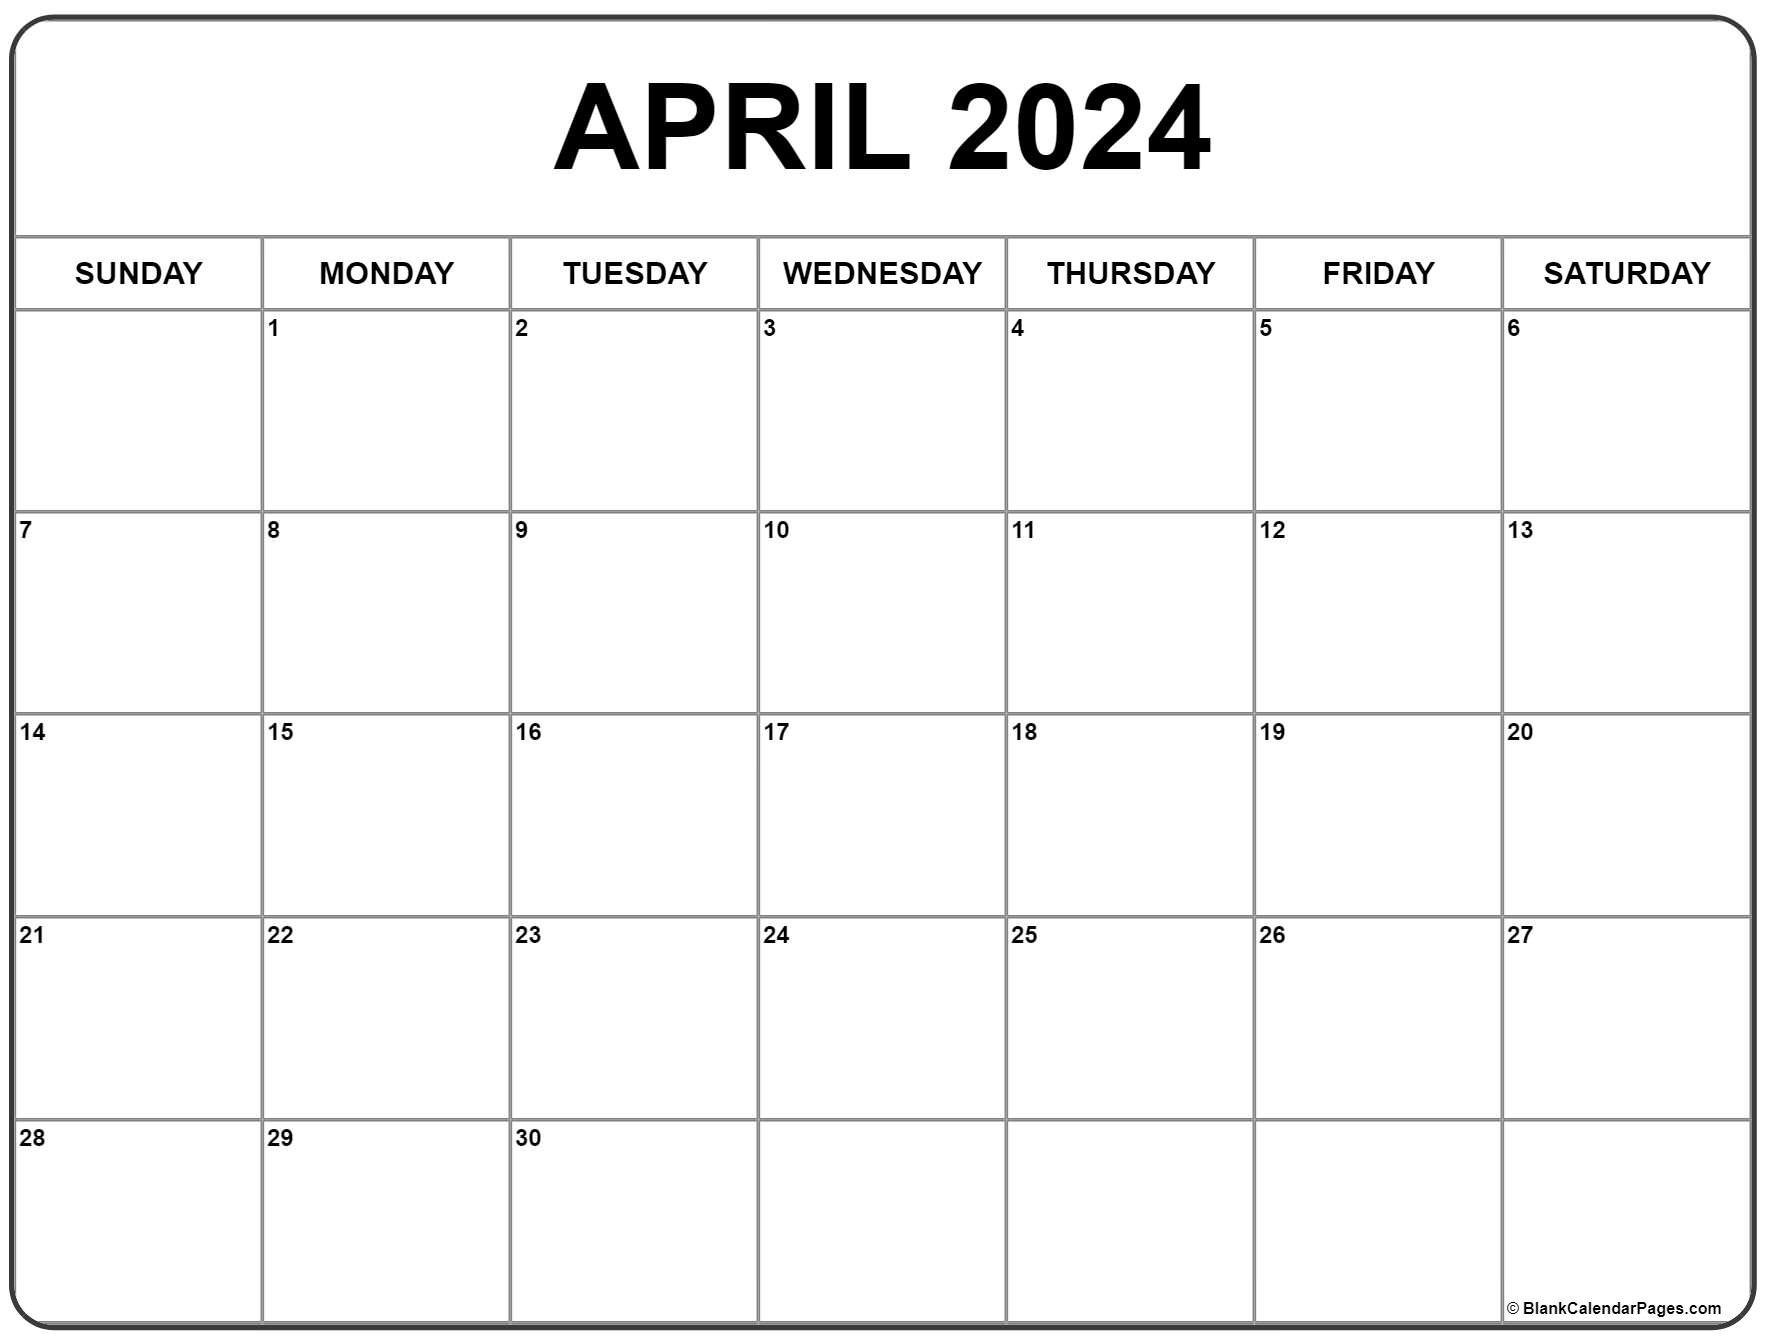 April 2024 Calendar | Free Printable Calendar for Printable Calendar For April And May 2024